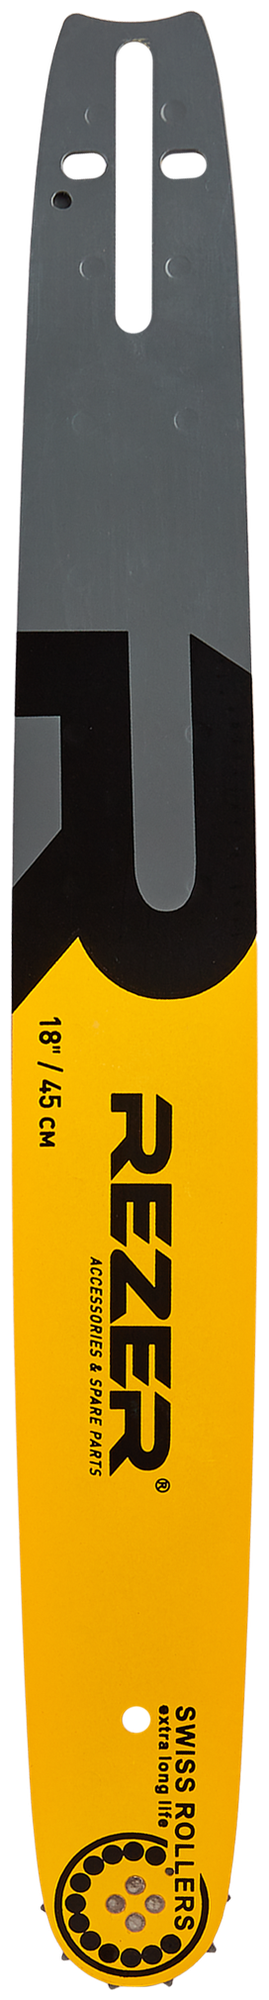 Шина для цепной пилы Rezer 455 L 8 F 18" 72 звеньев паз 1.5 мм шаг 0.325 дюйма